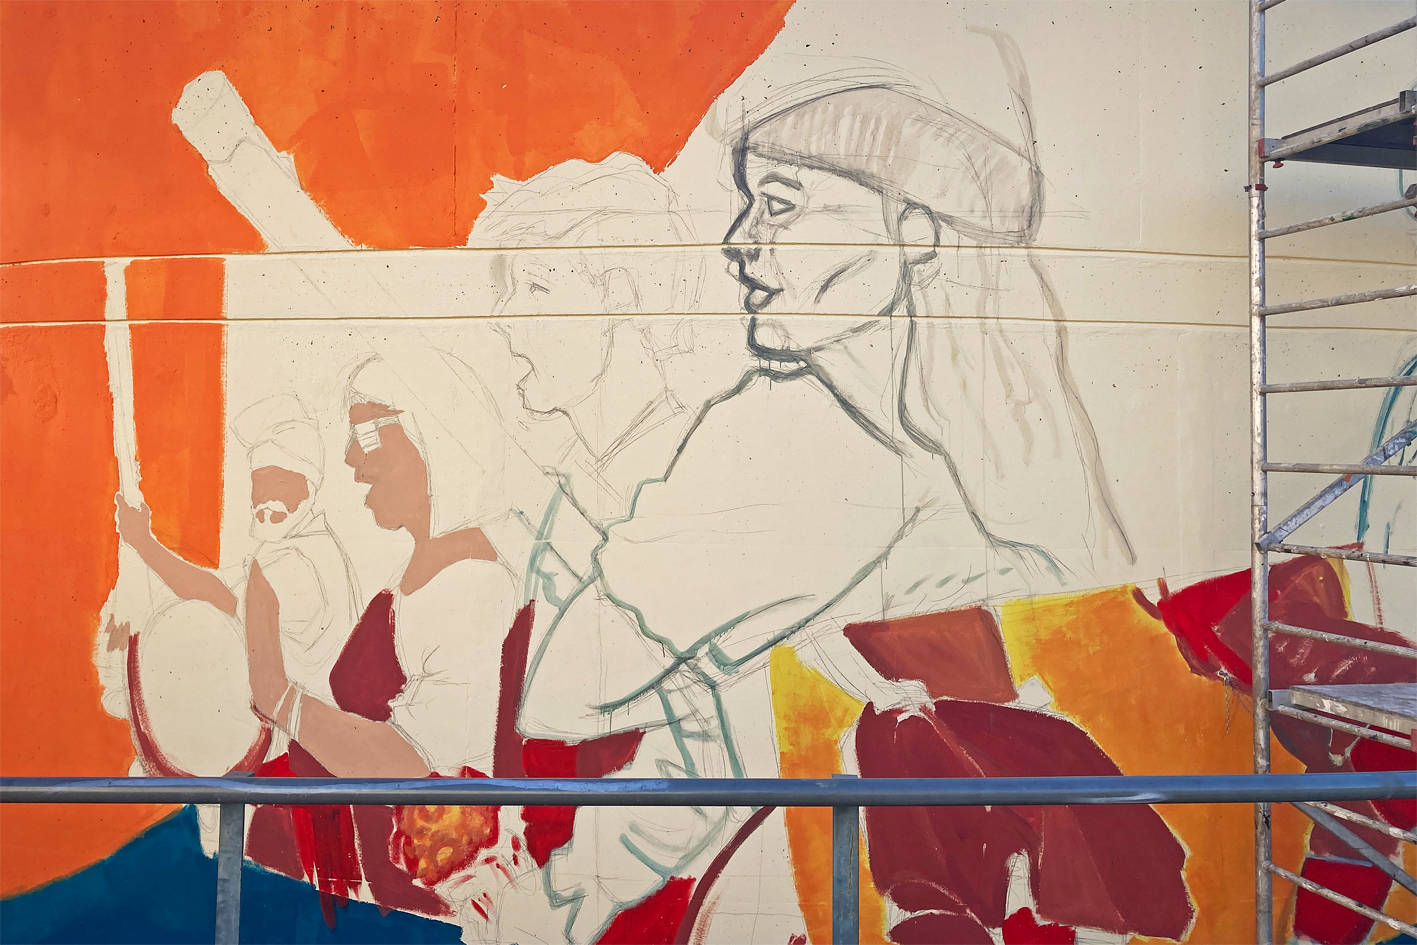 Detall del nou mural de Caramelles a l'Estació d'Autobusos, en procés de realització.